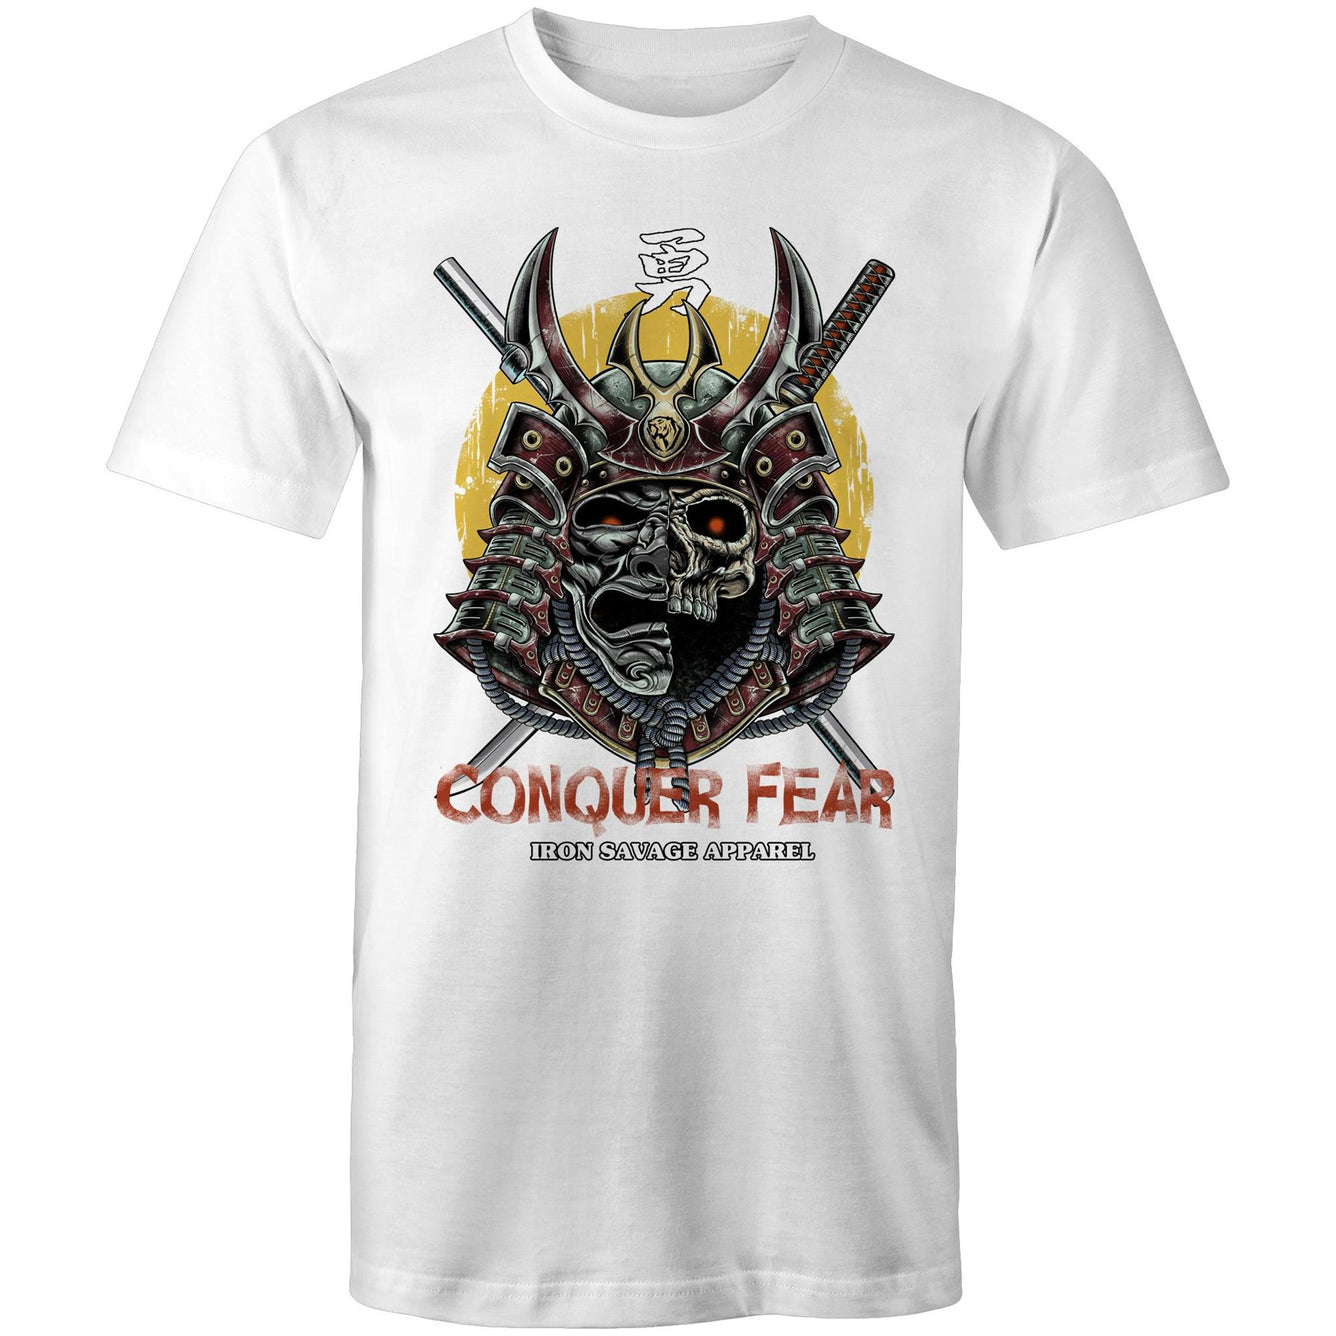 Conquer Fear White T-shirt (AU)